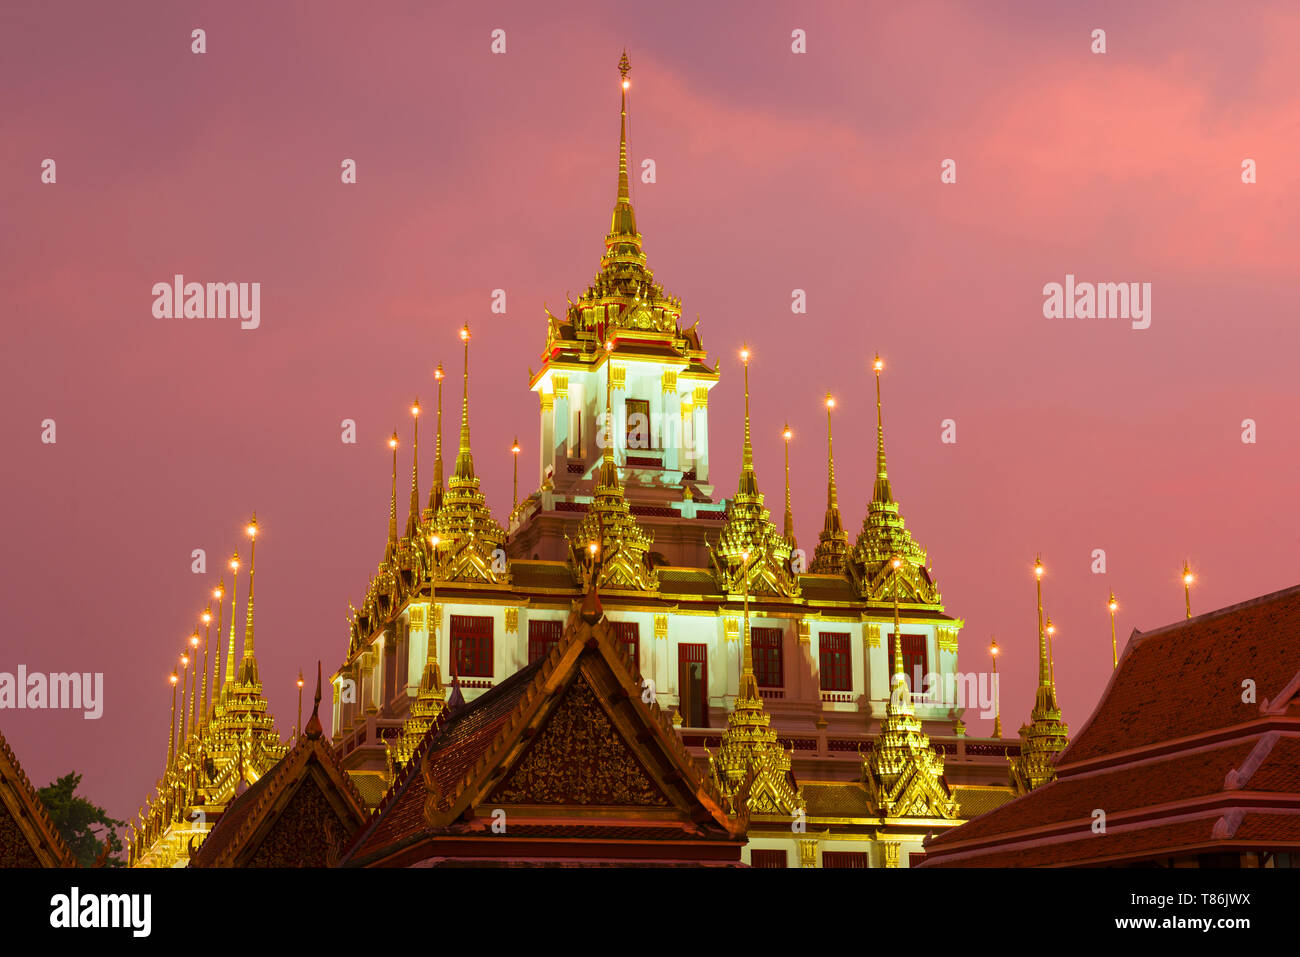 Haut de la chedi Loha Prasat du temple bouddhique Wat Ratchanatdaram Varavihara close-up dans le contexte de la coucher du soleil. Bangkok, Thaïlande Banque D'Images